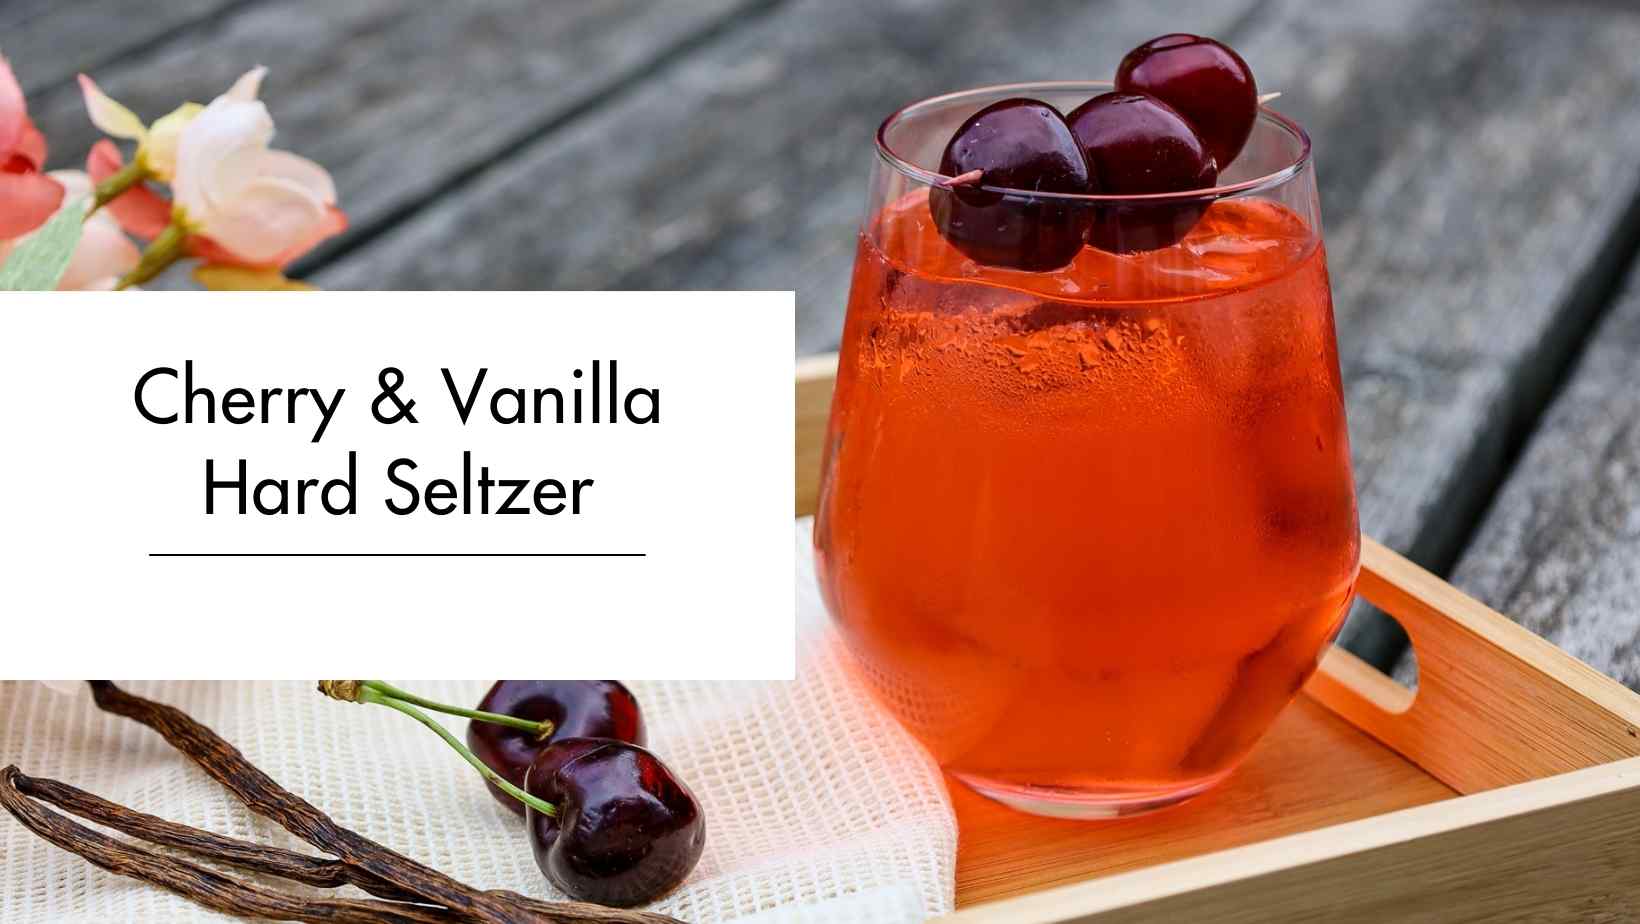 Cherry & Vanilla Hard Seltzer